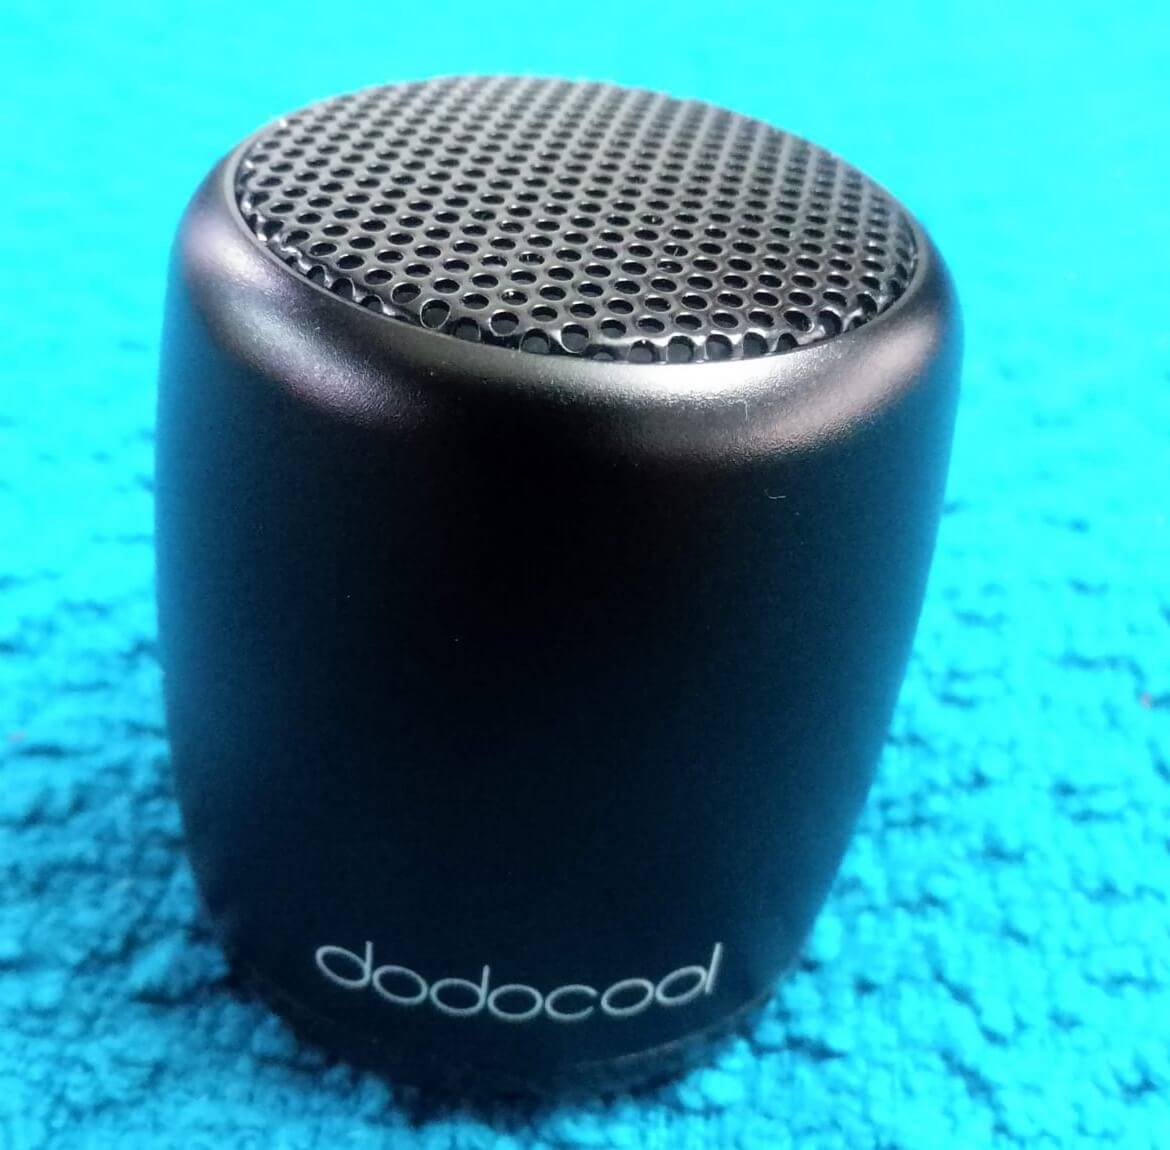 dodocool speaker